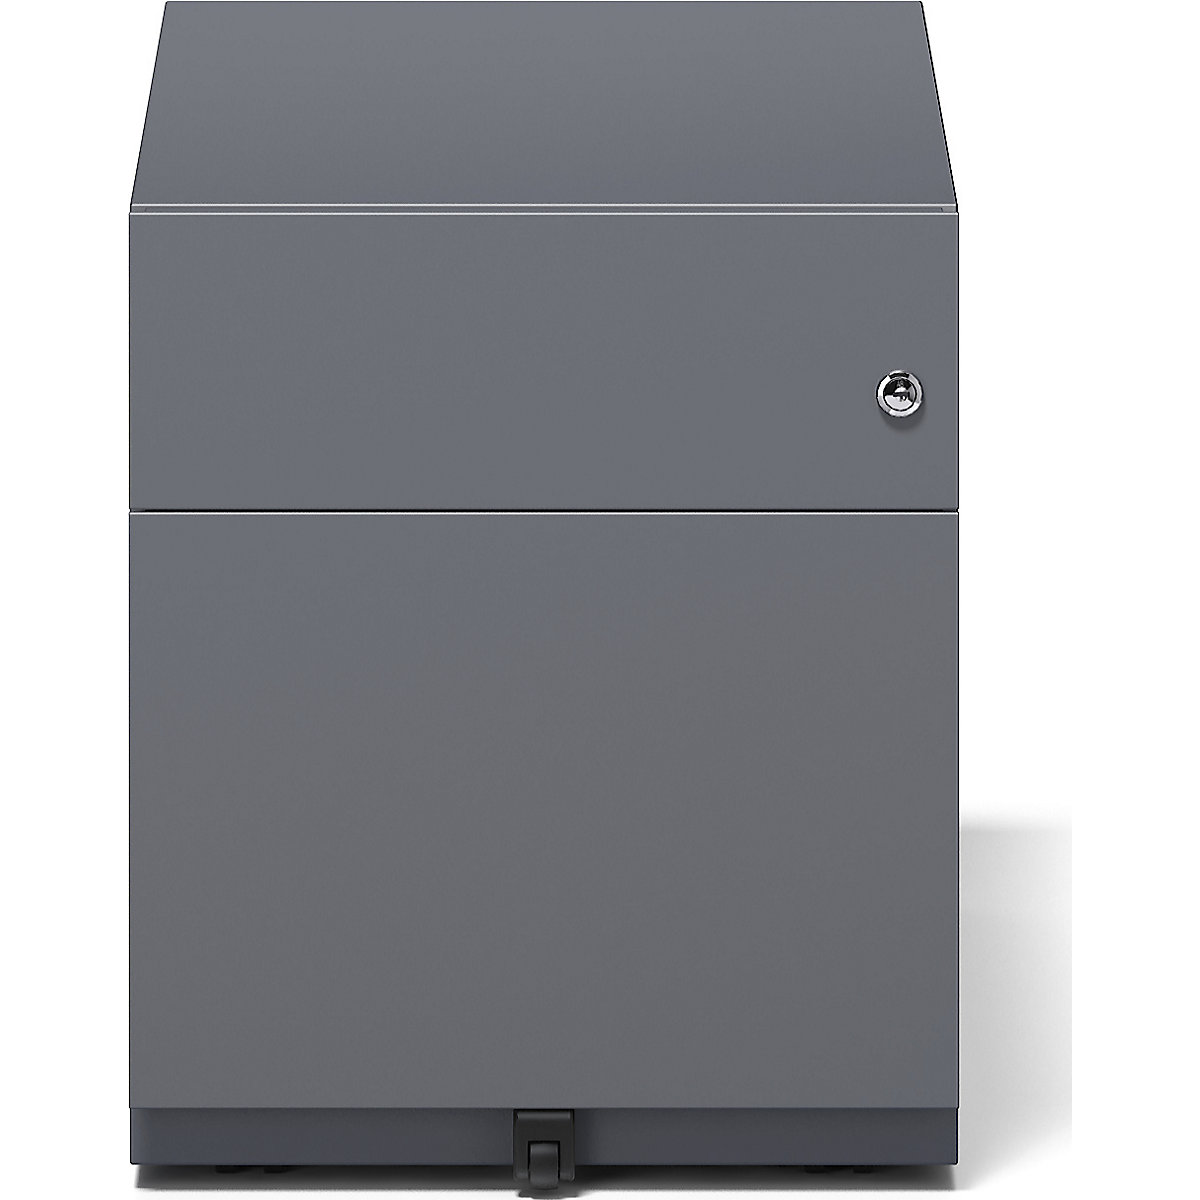 BISLEY – Buck rodante Note™ con 1 archivador colgante y 1 cajón universal (Imagen del producto 8)